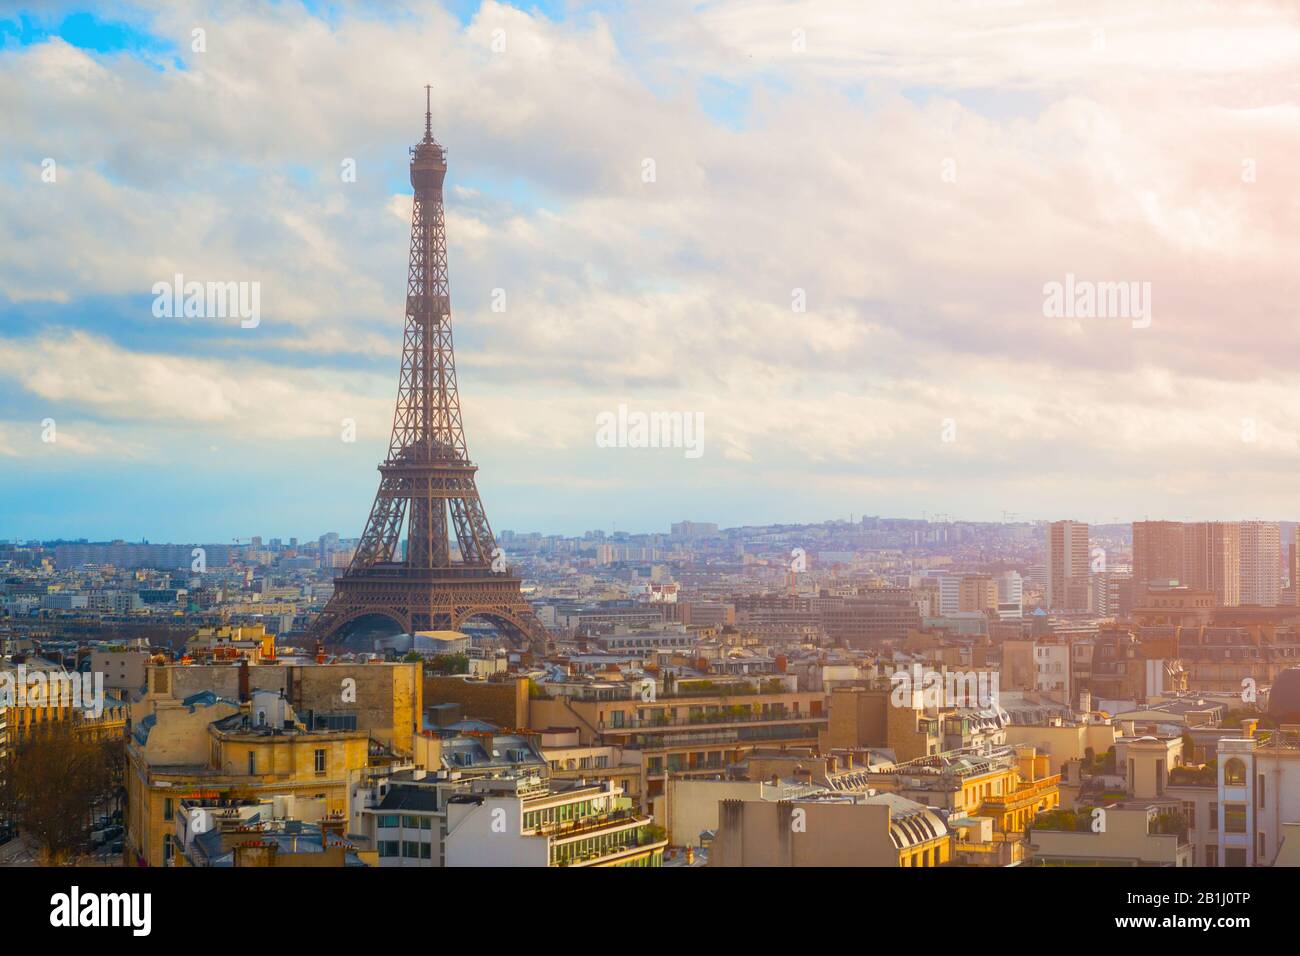 La Tour Eiffel entourant les magnifiques toits de Paris, France Banque D'Images